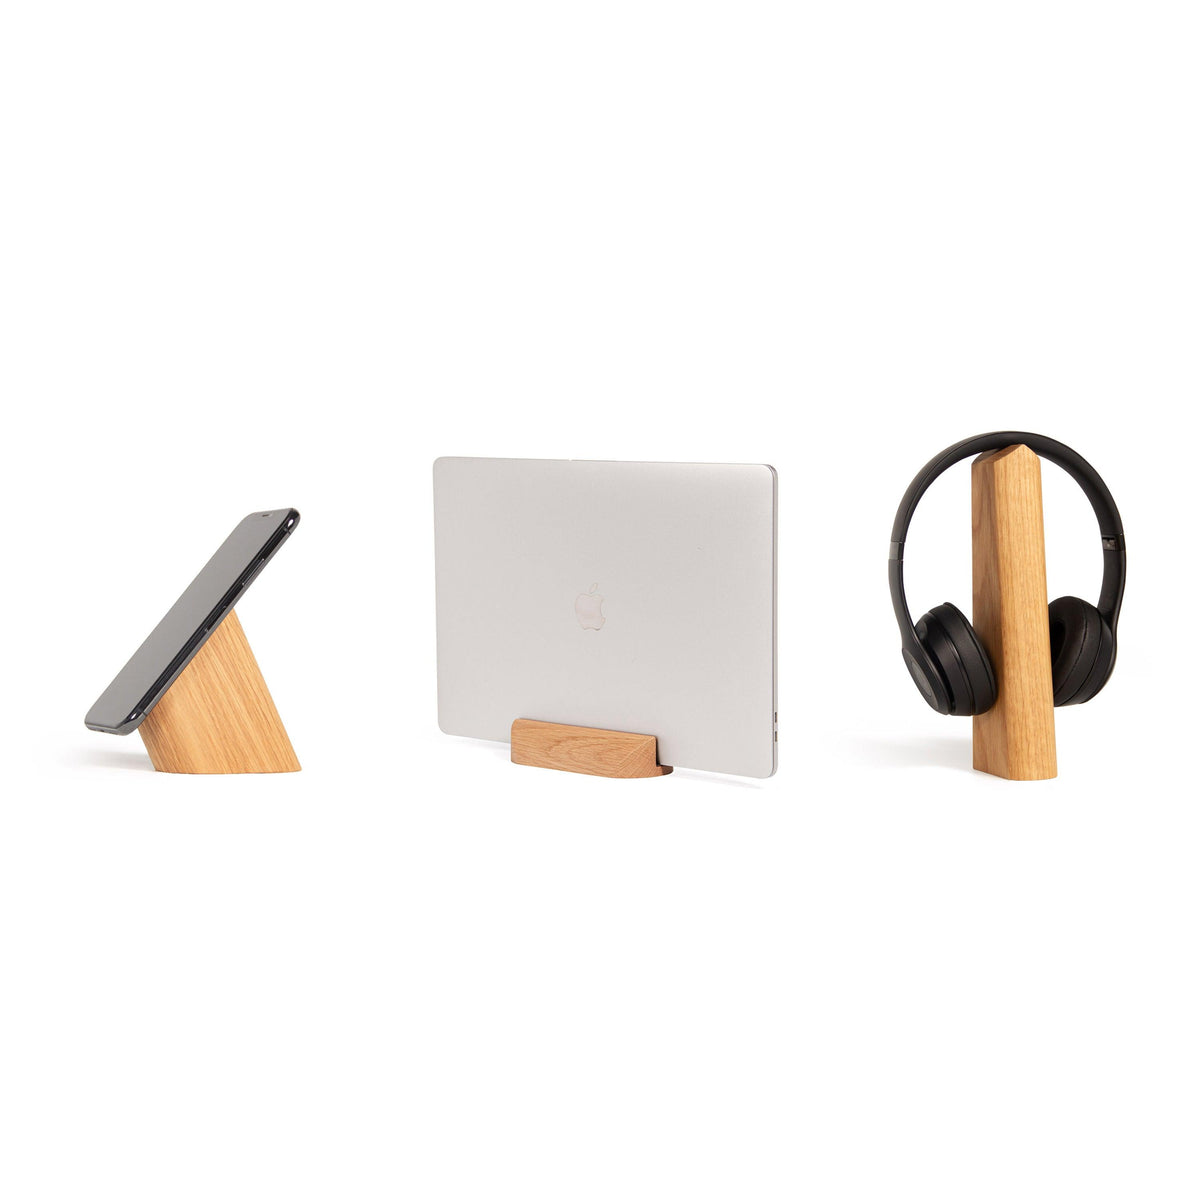 Set de 3 supports pour mobile, ordinateur portable &amp; écouteurs - 37+ Design